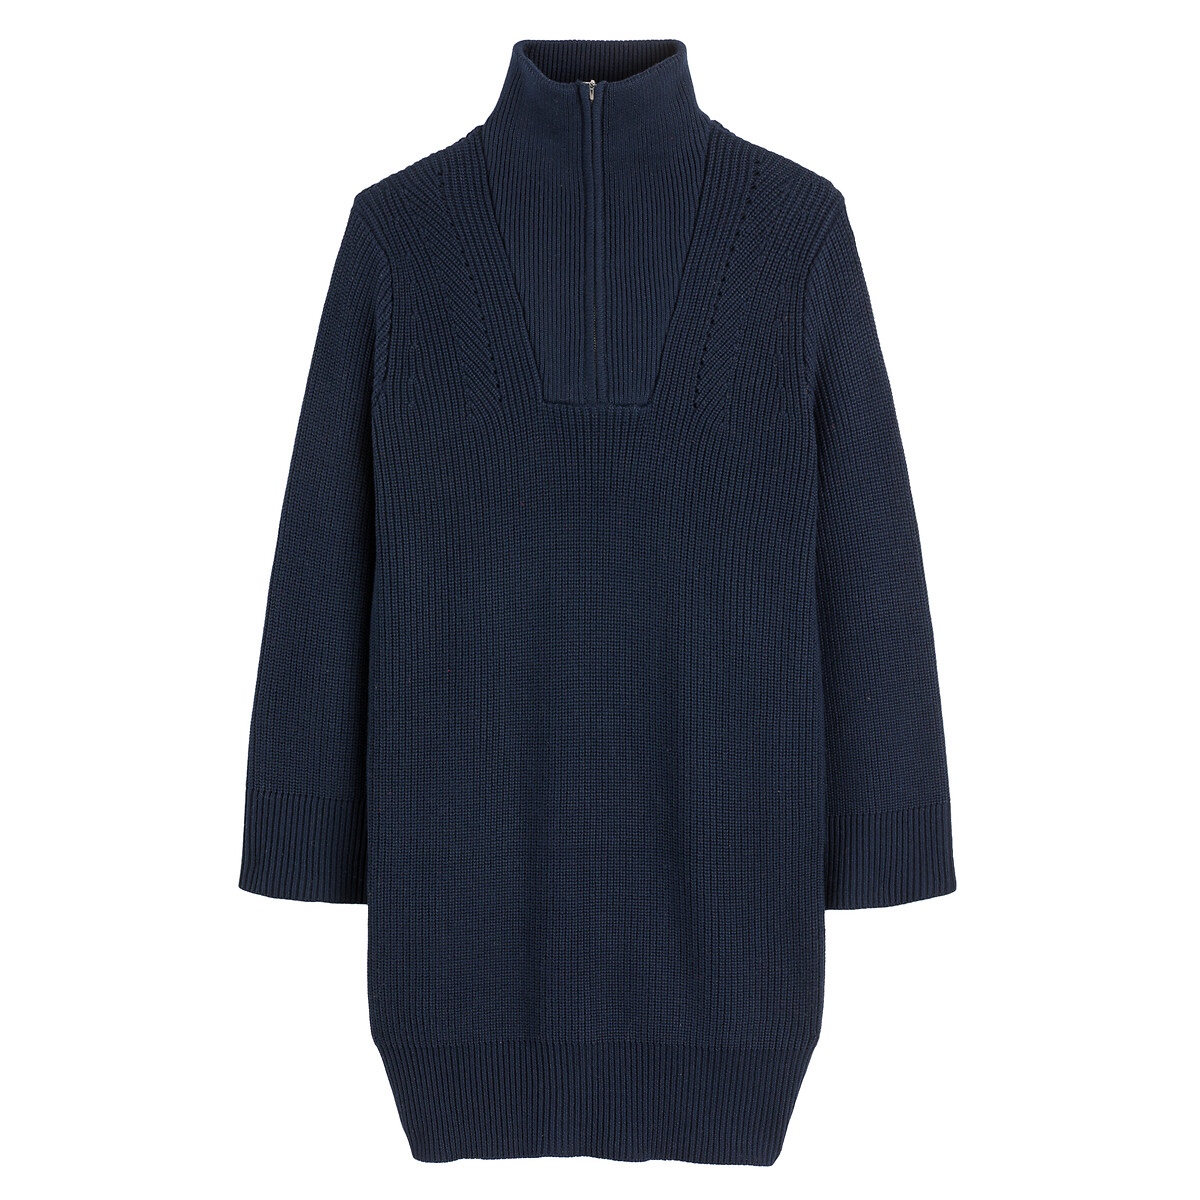 Платье-пуловер Короткое с воротником-стойкой длинные рукава XS синий LaRedoute, размер XS - фото 5